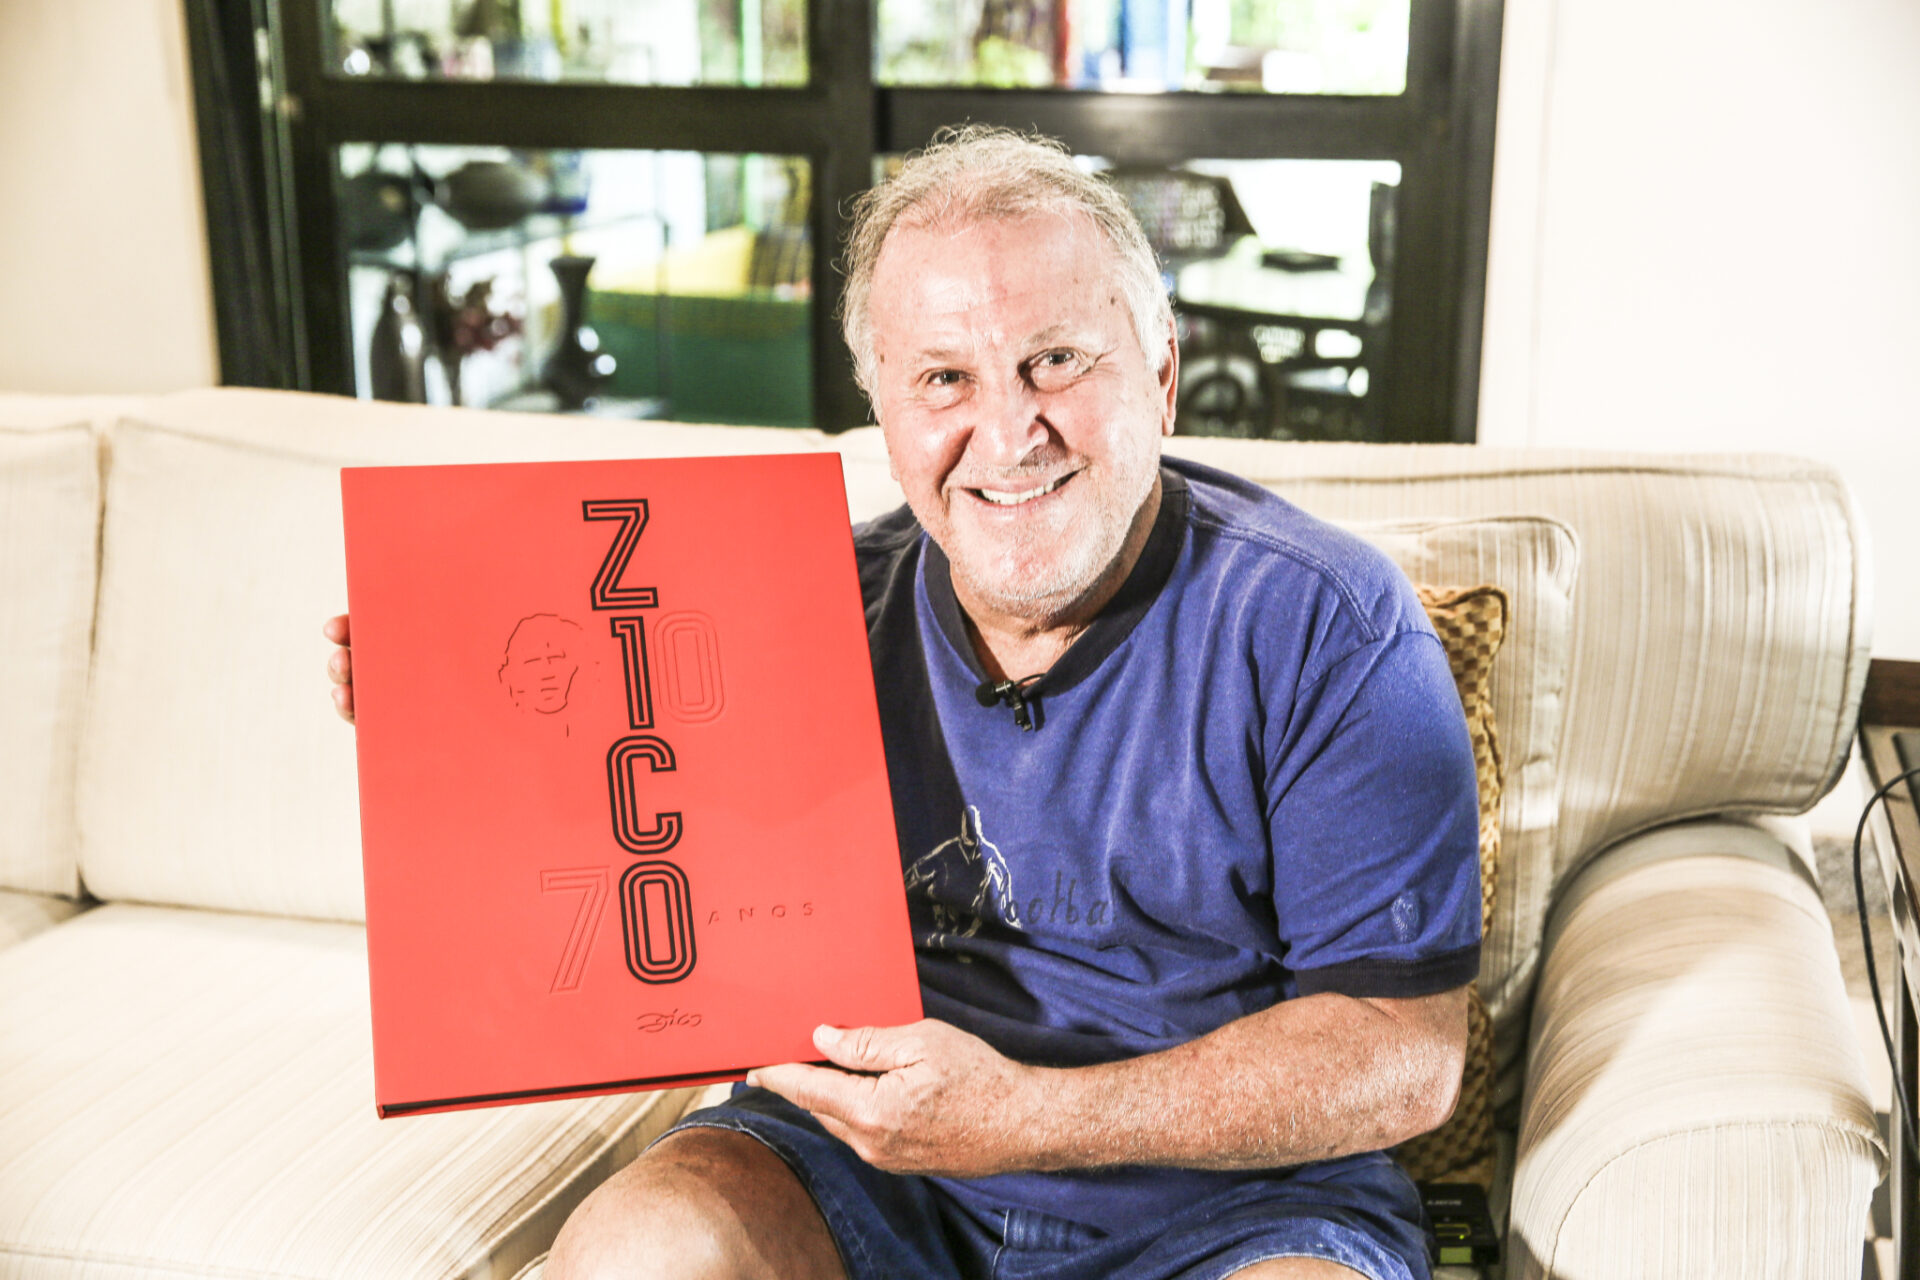 App PLACAR Digital oferece livro autografado por Zico; saiba como participar